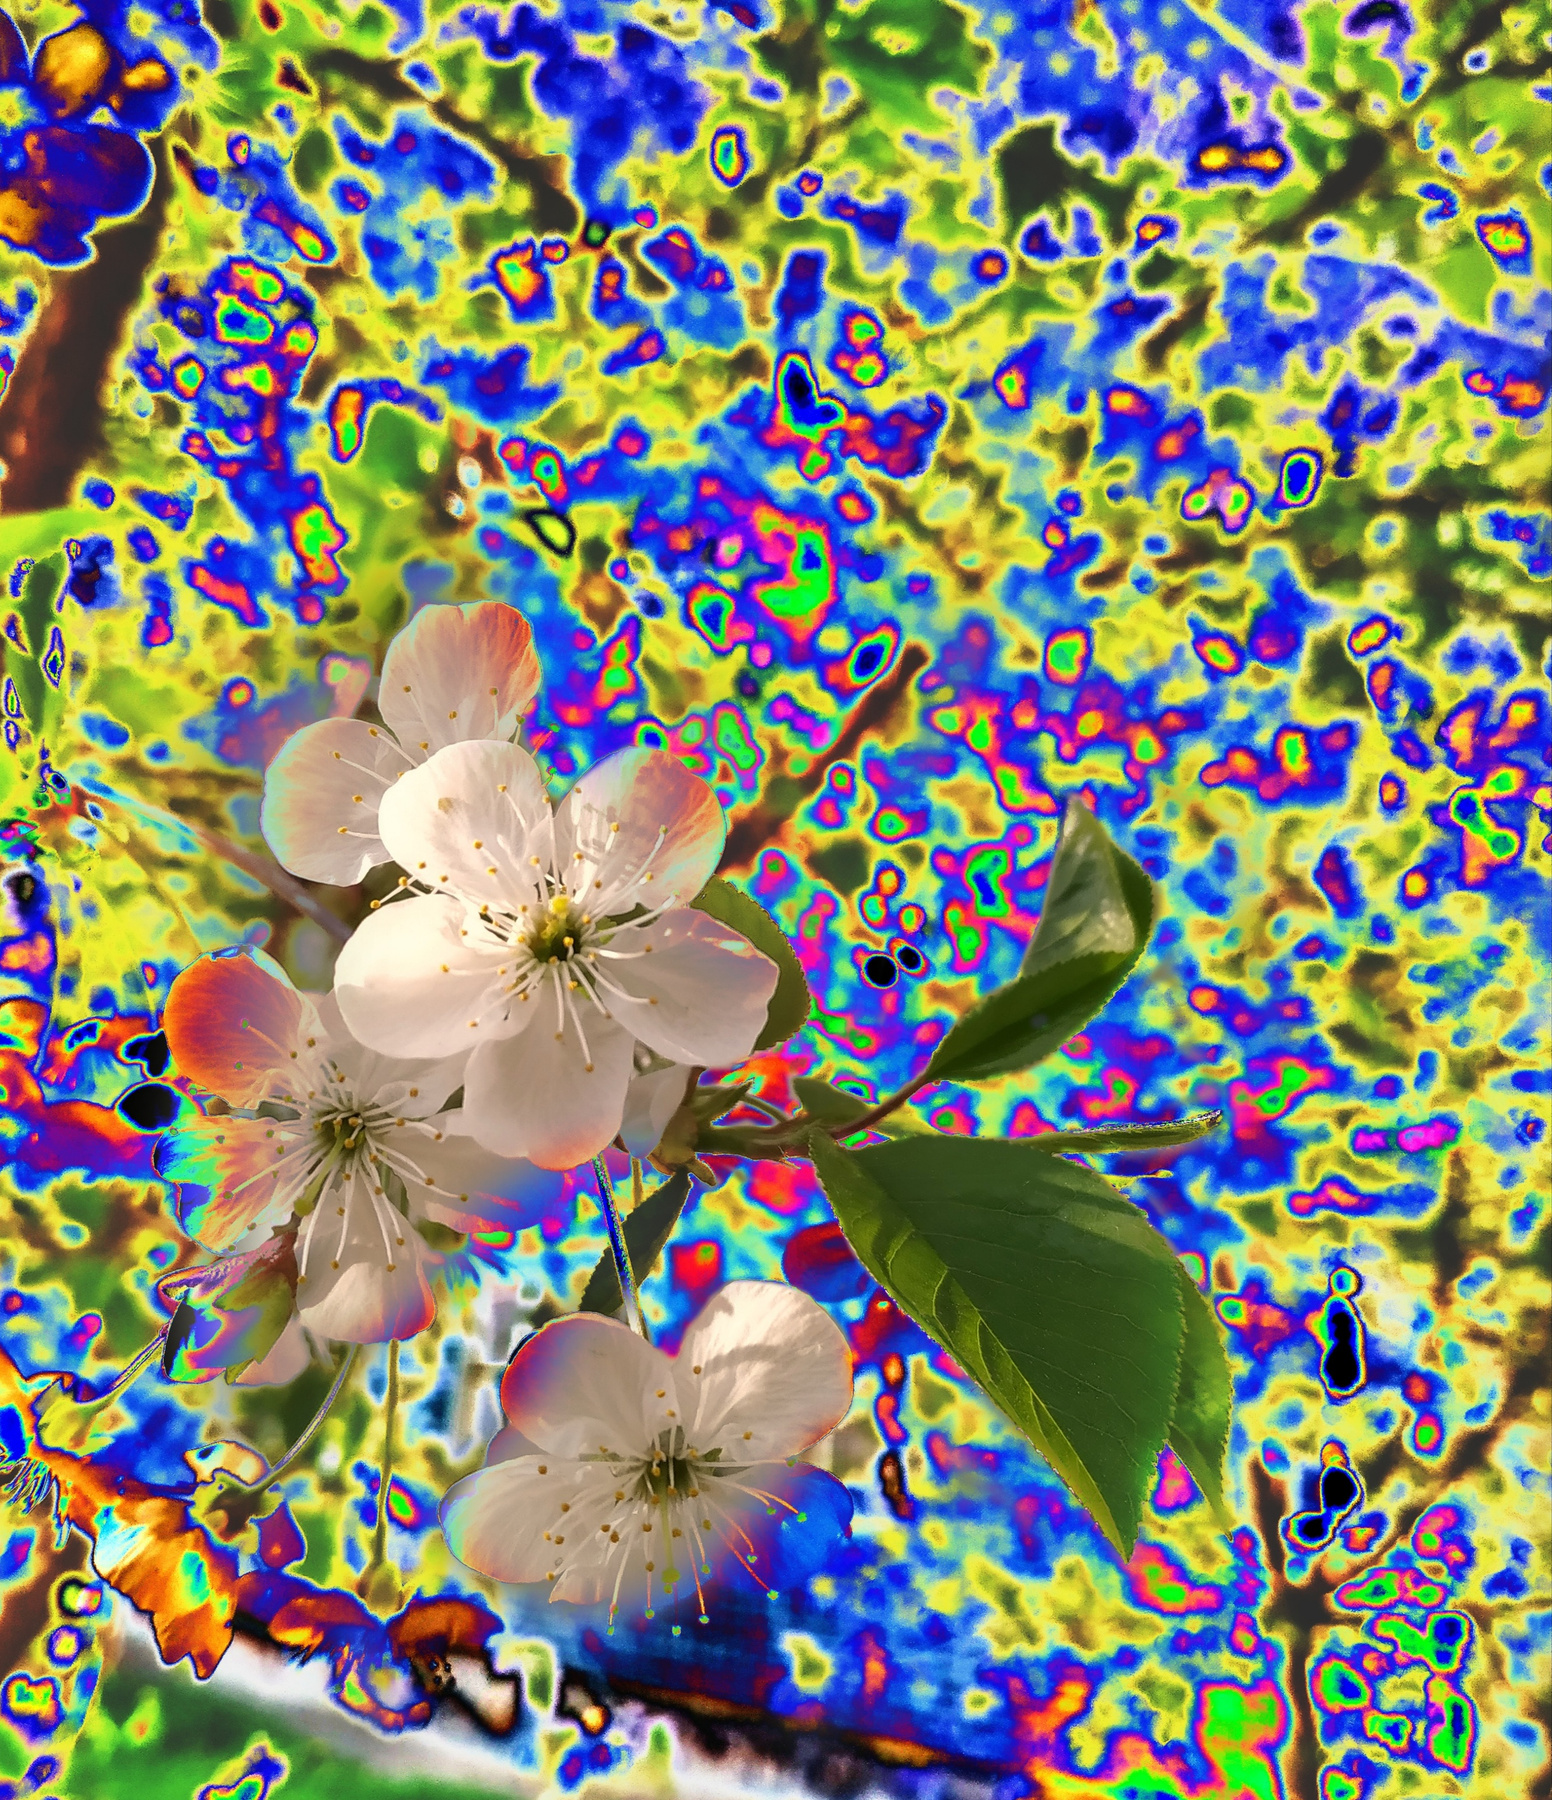 трррртатататуту сюр эффекты весна психоделия цветы природа нет дерево